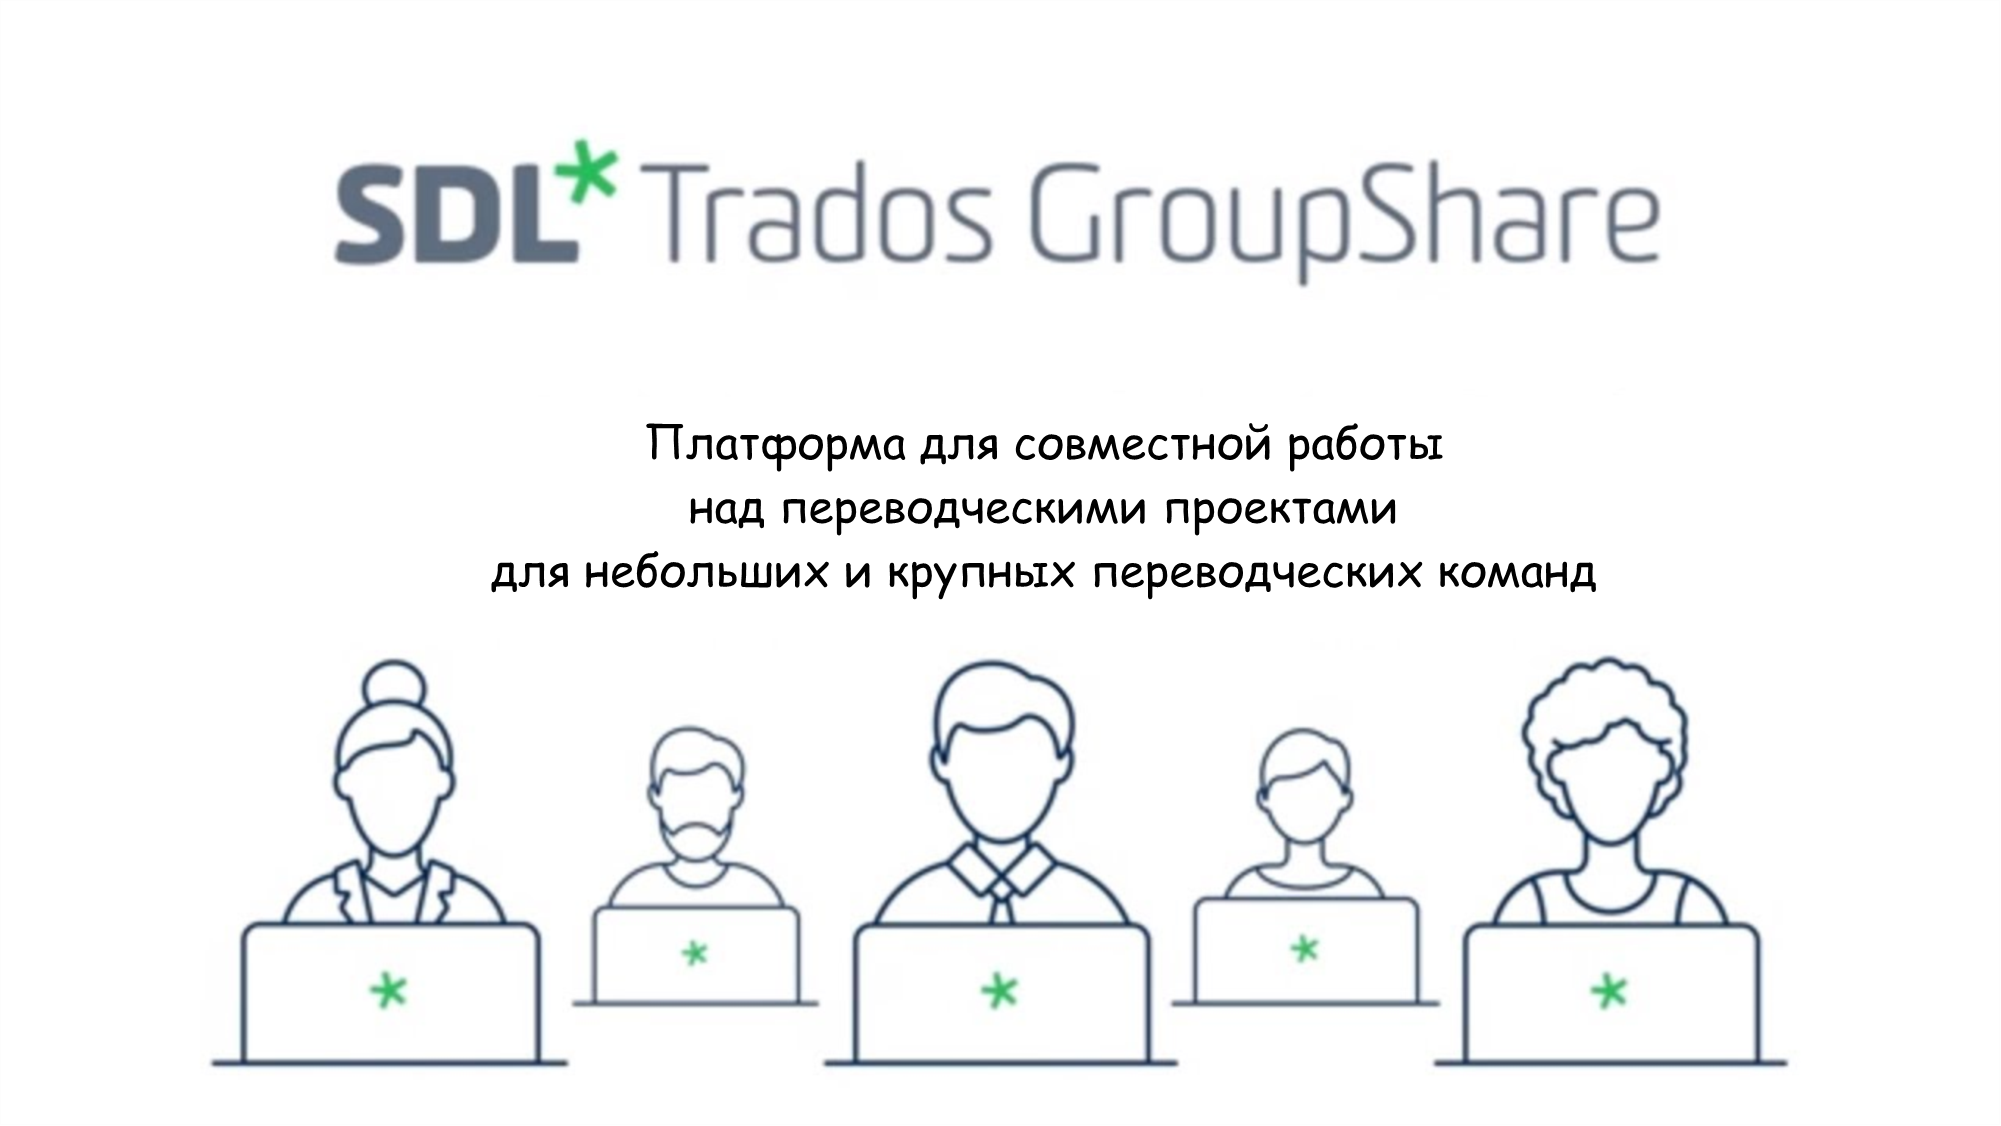 SDL Trados Studio - GroupShare edition